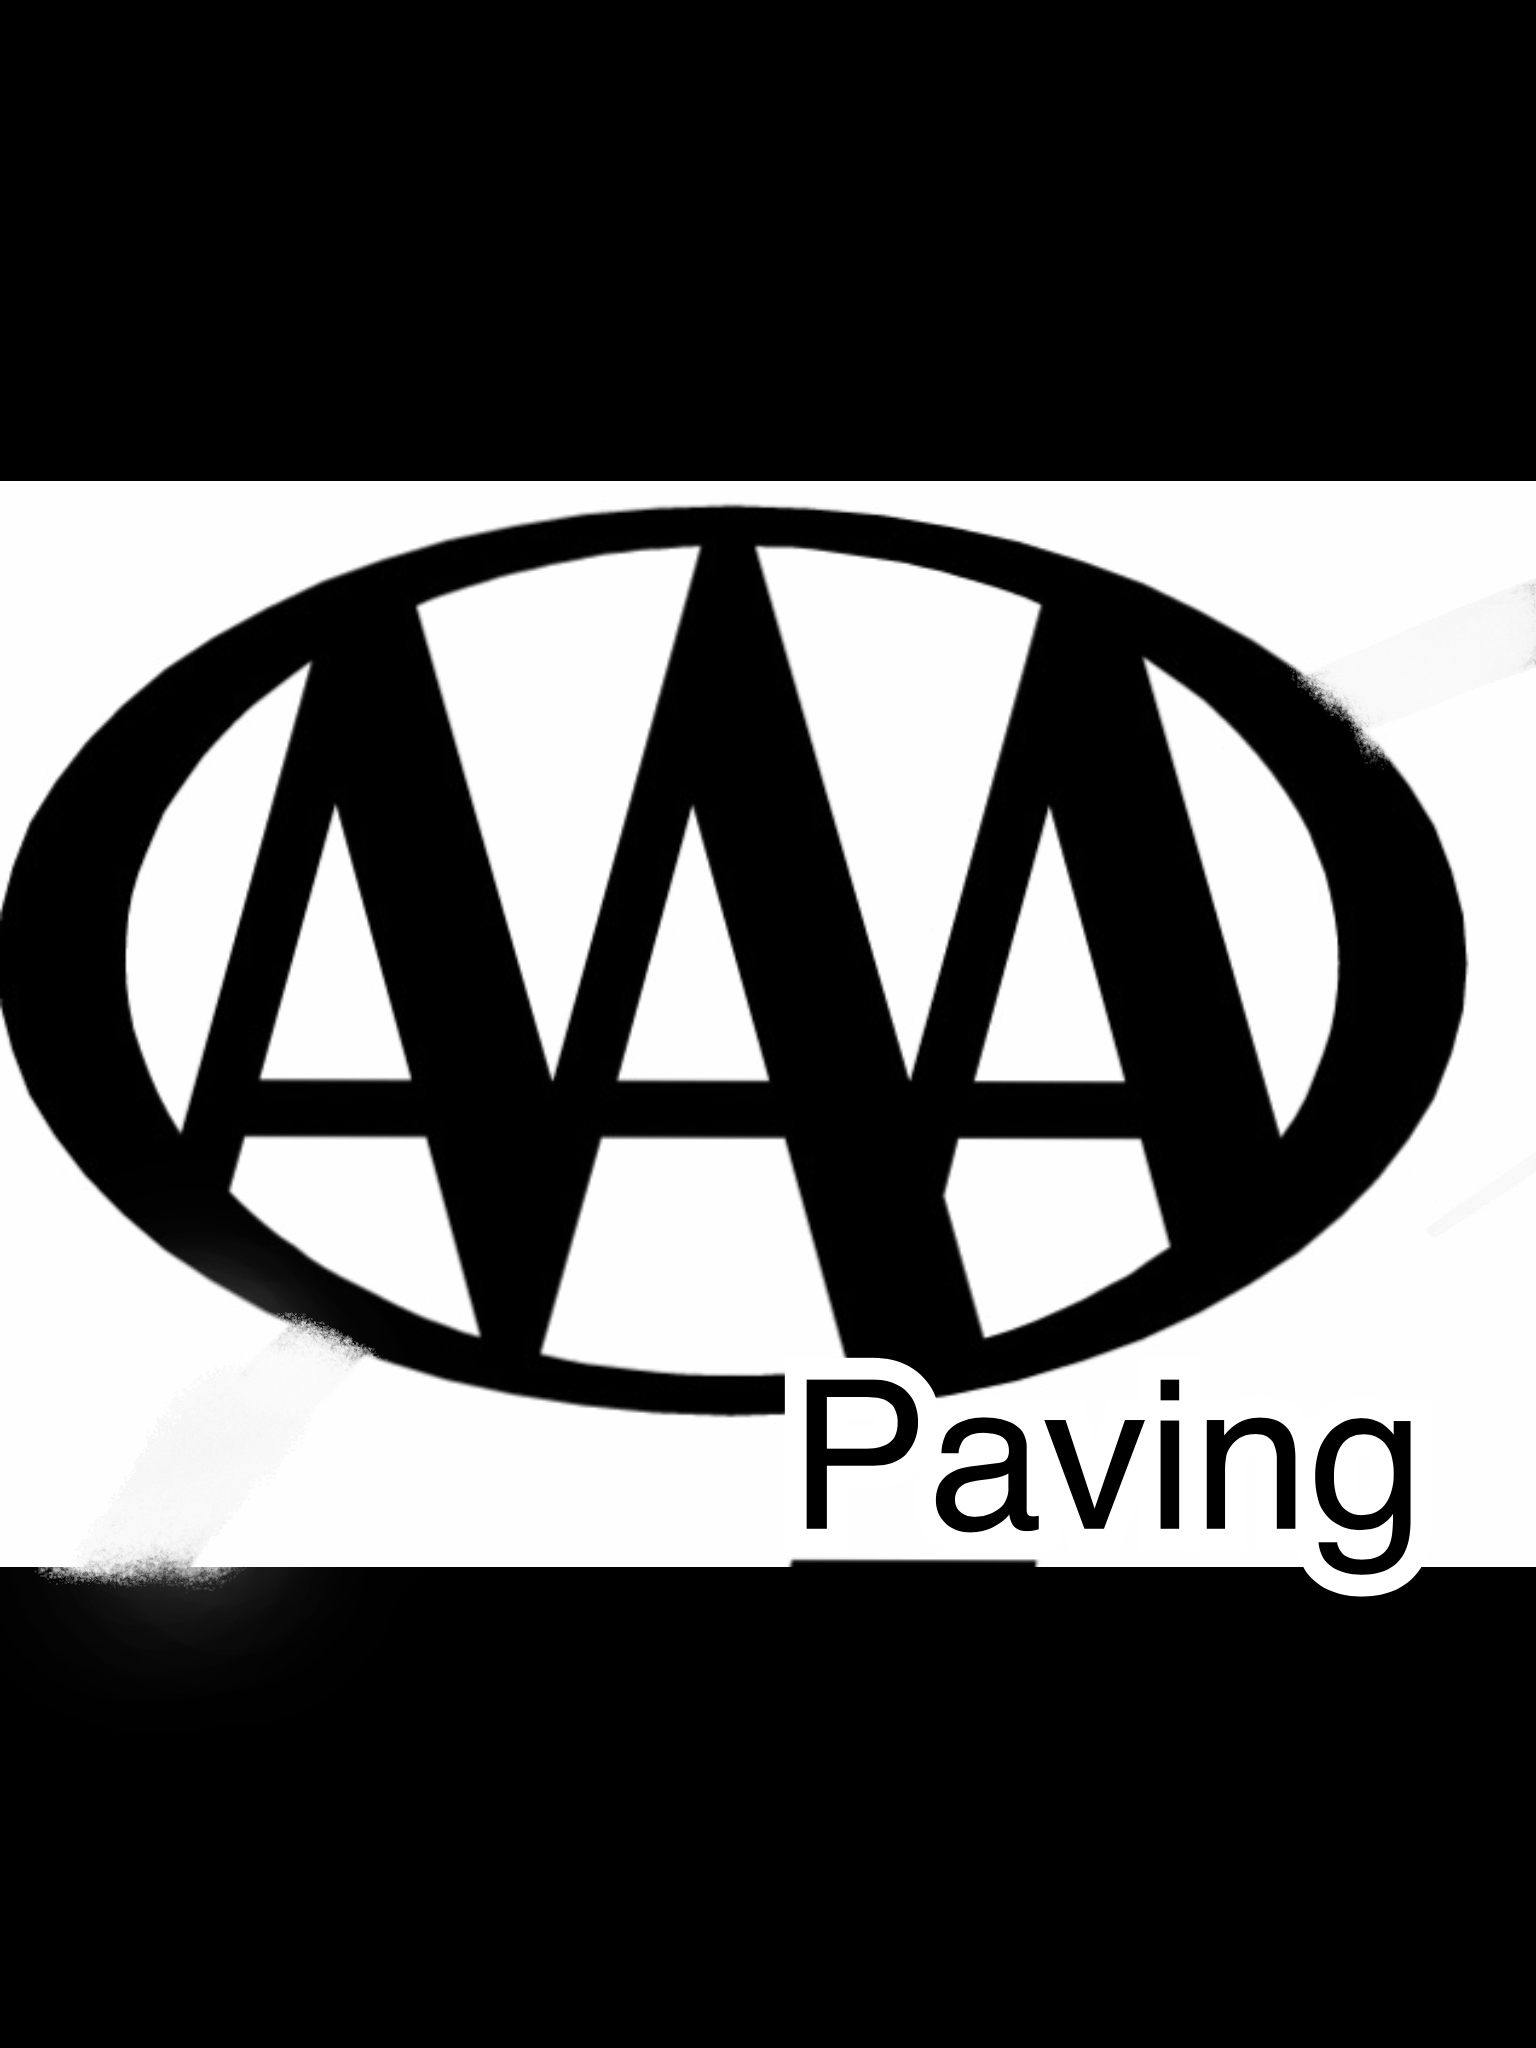 AAA Paving Logo